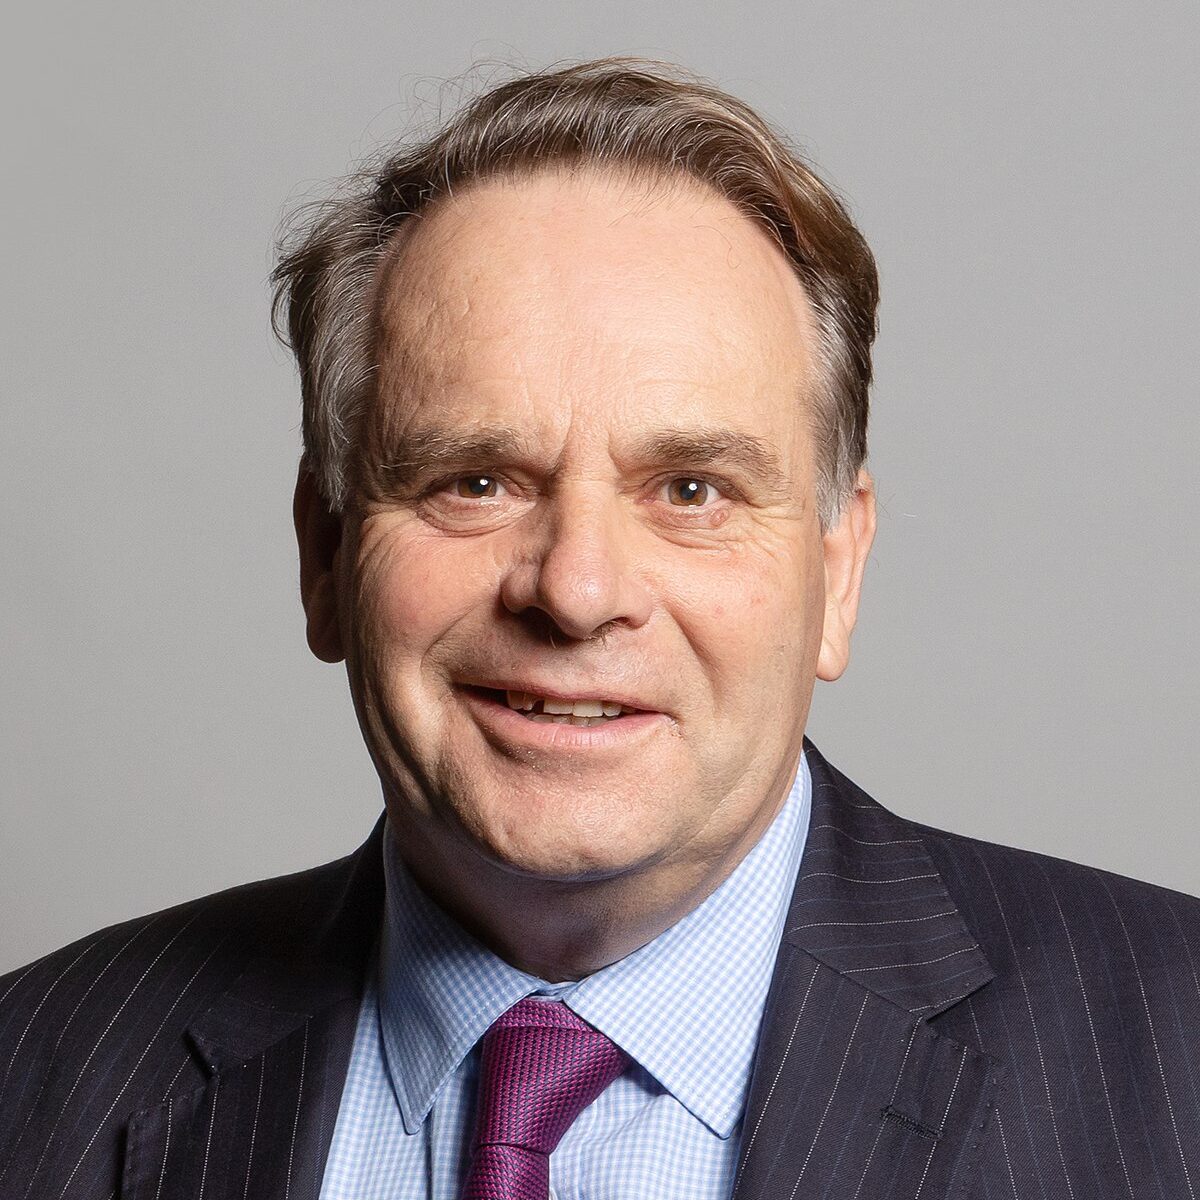 Neil Parrish MP